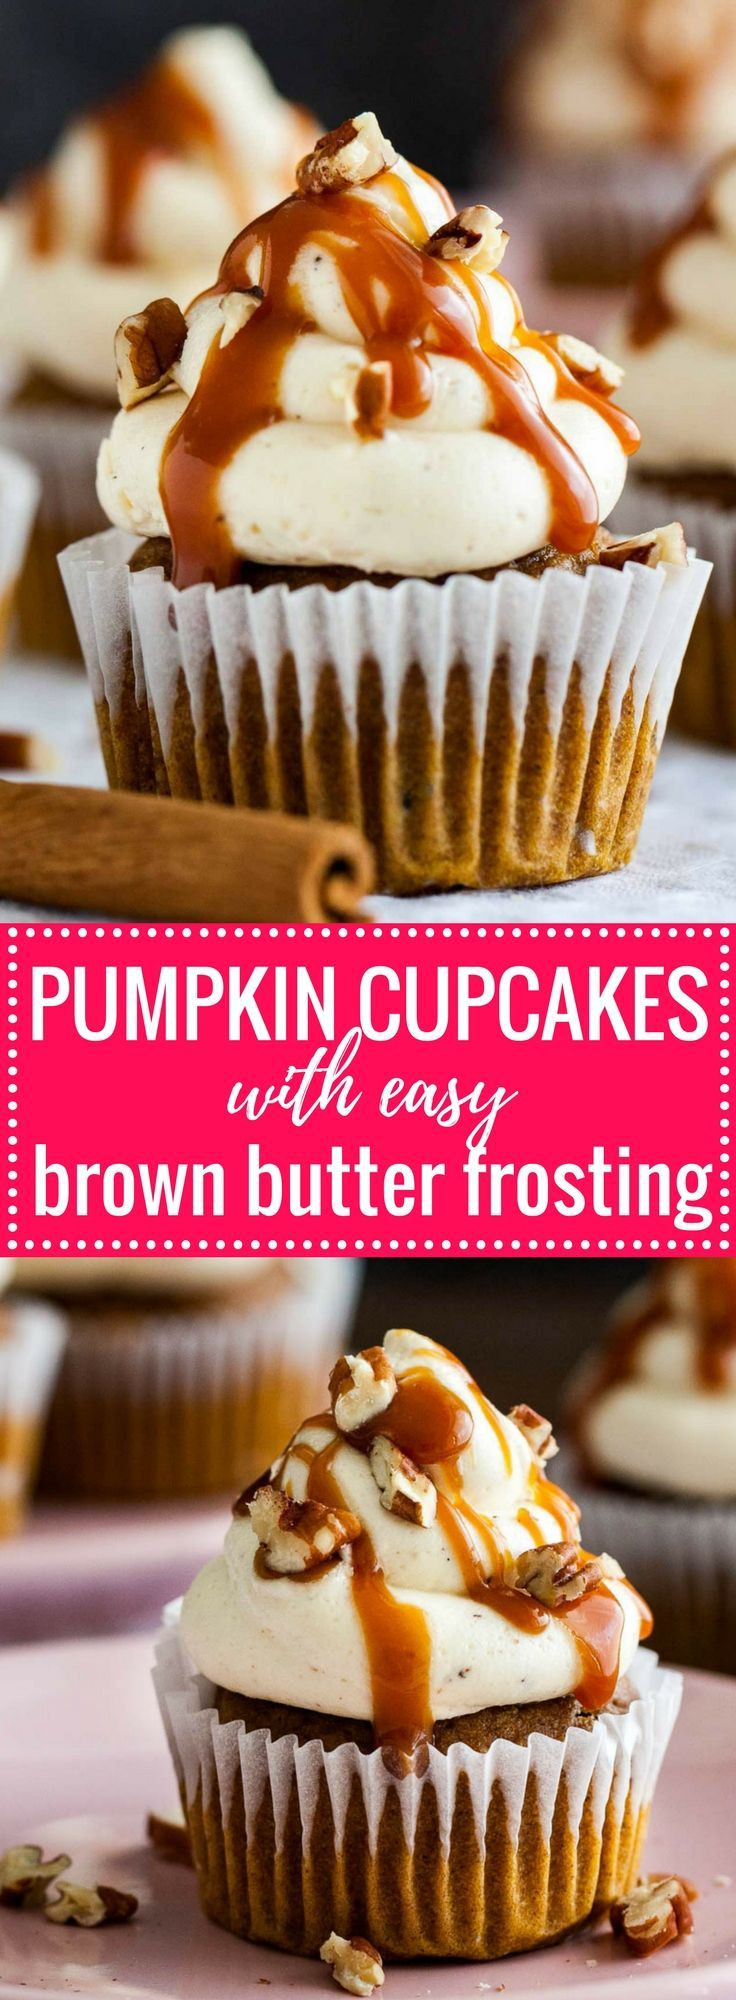 25 Fabulous Autumn Fall Cupcakes
 Best 25 Autumn cupcakes ideas on Pinterest